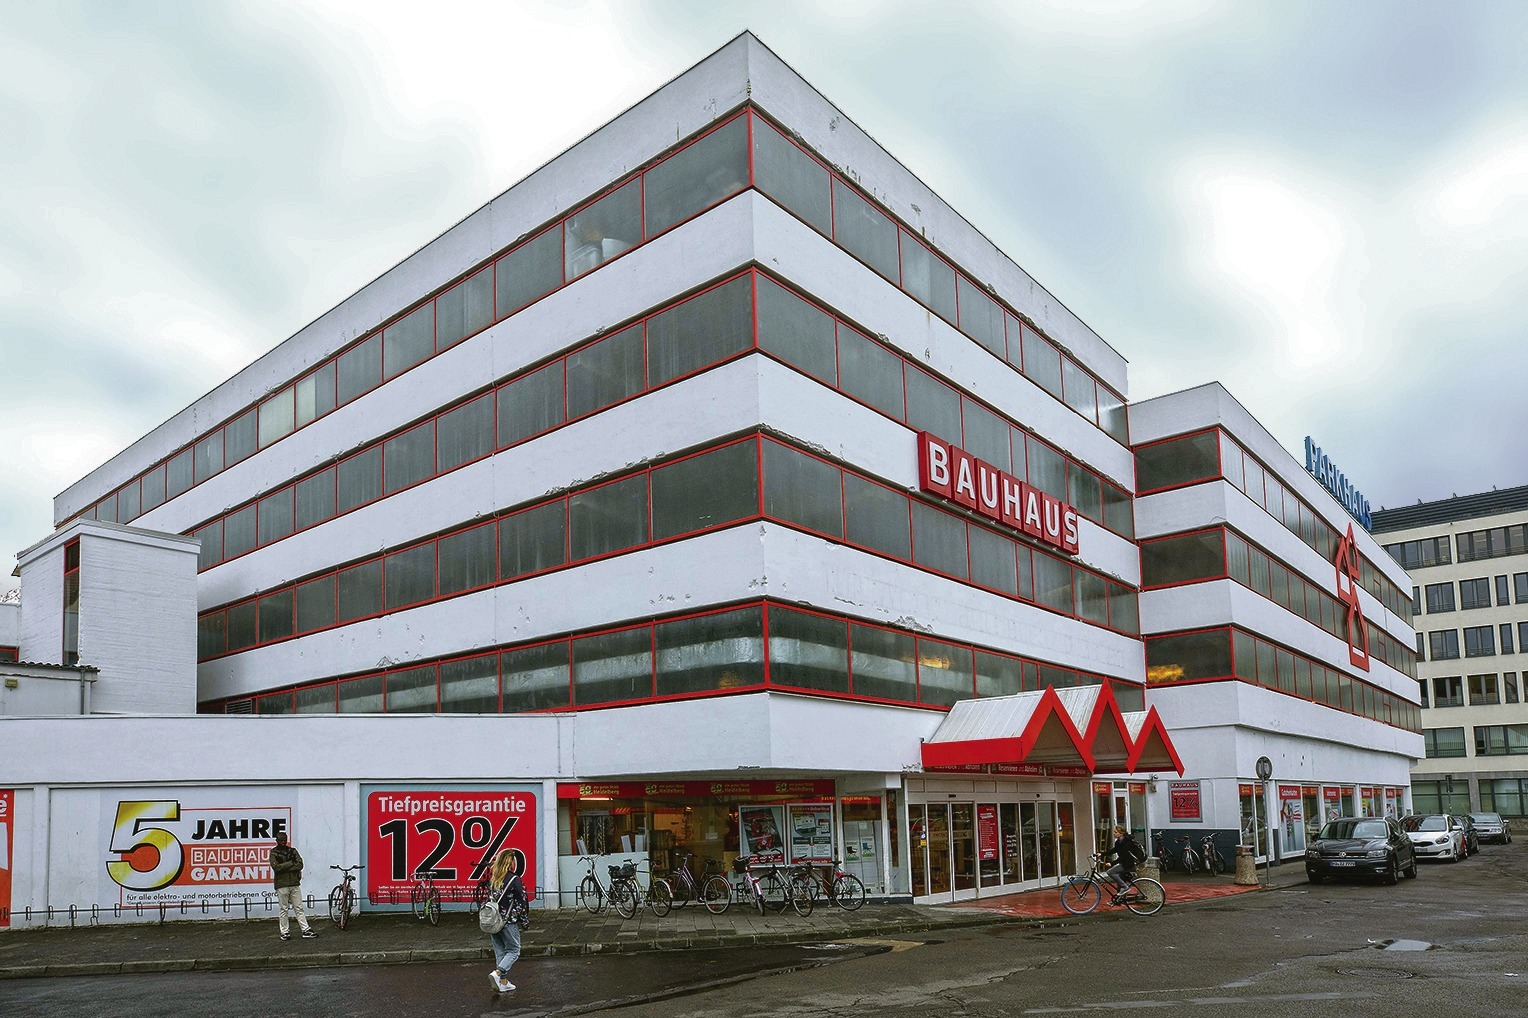 Bauhaus Mannheim